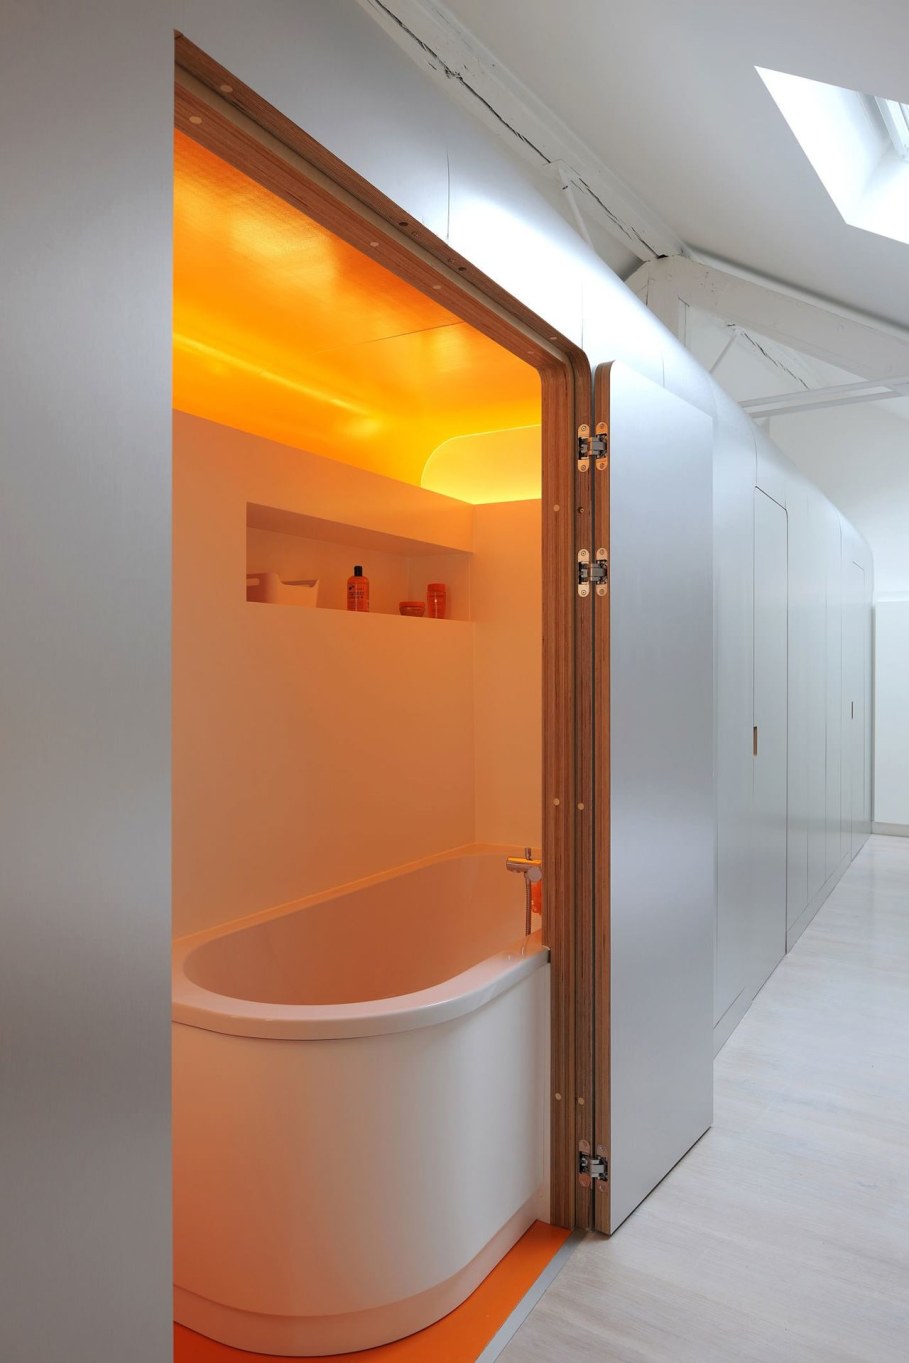 Creative Apartment Design from Dethier Architectures - Orange Bathroom 3